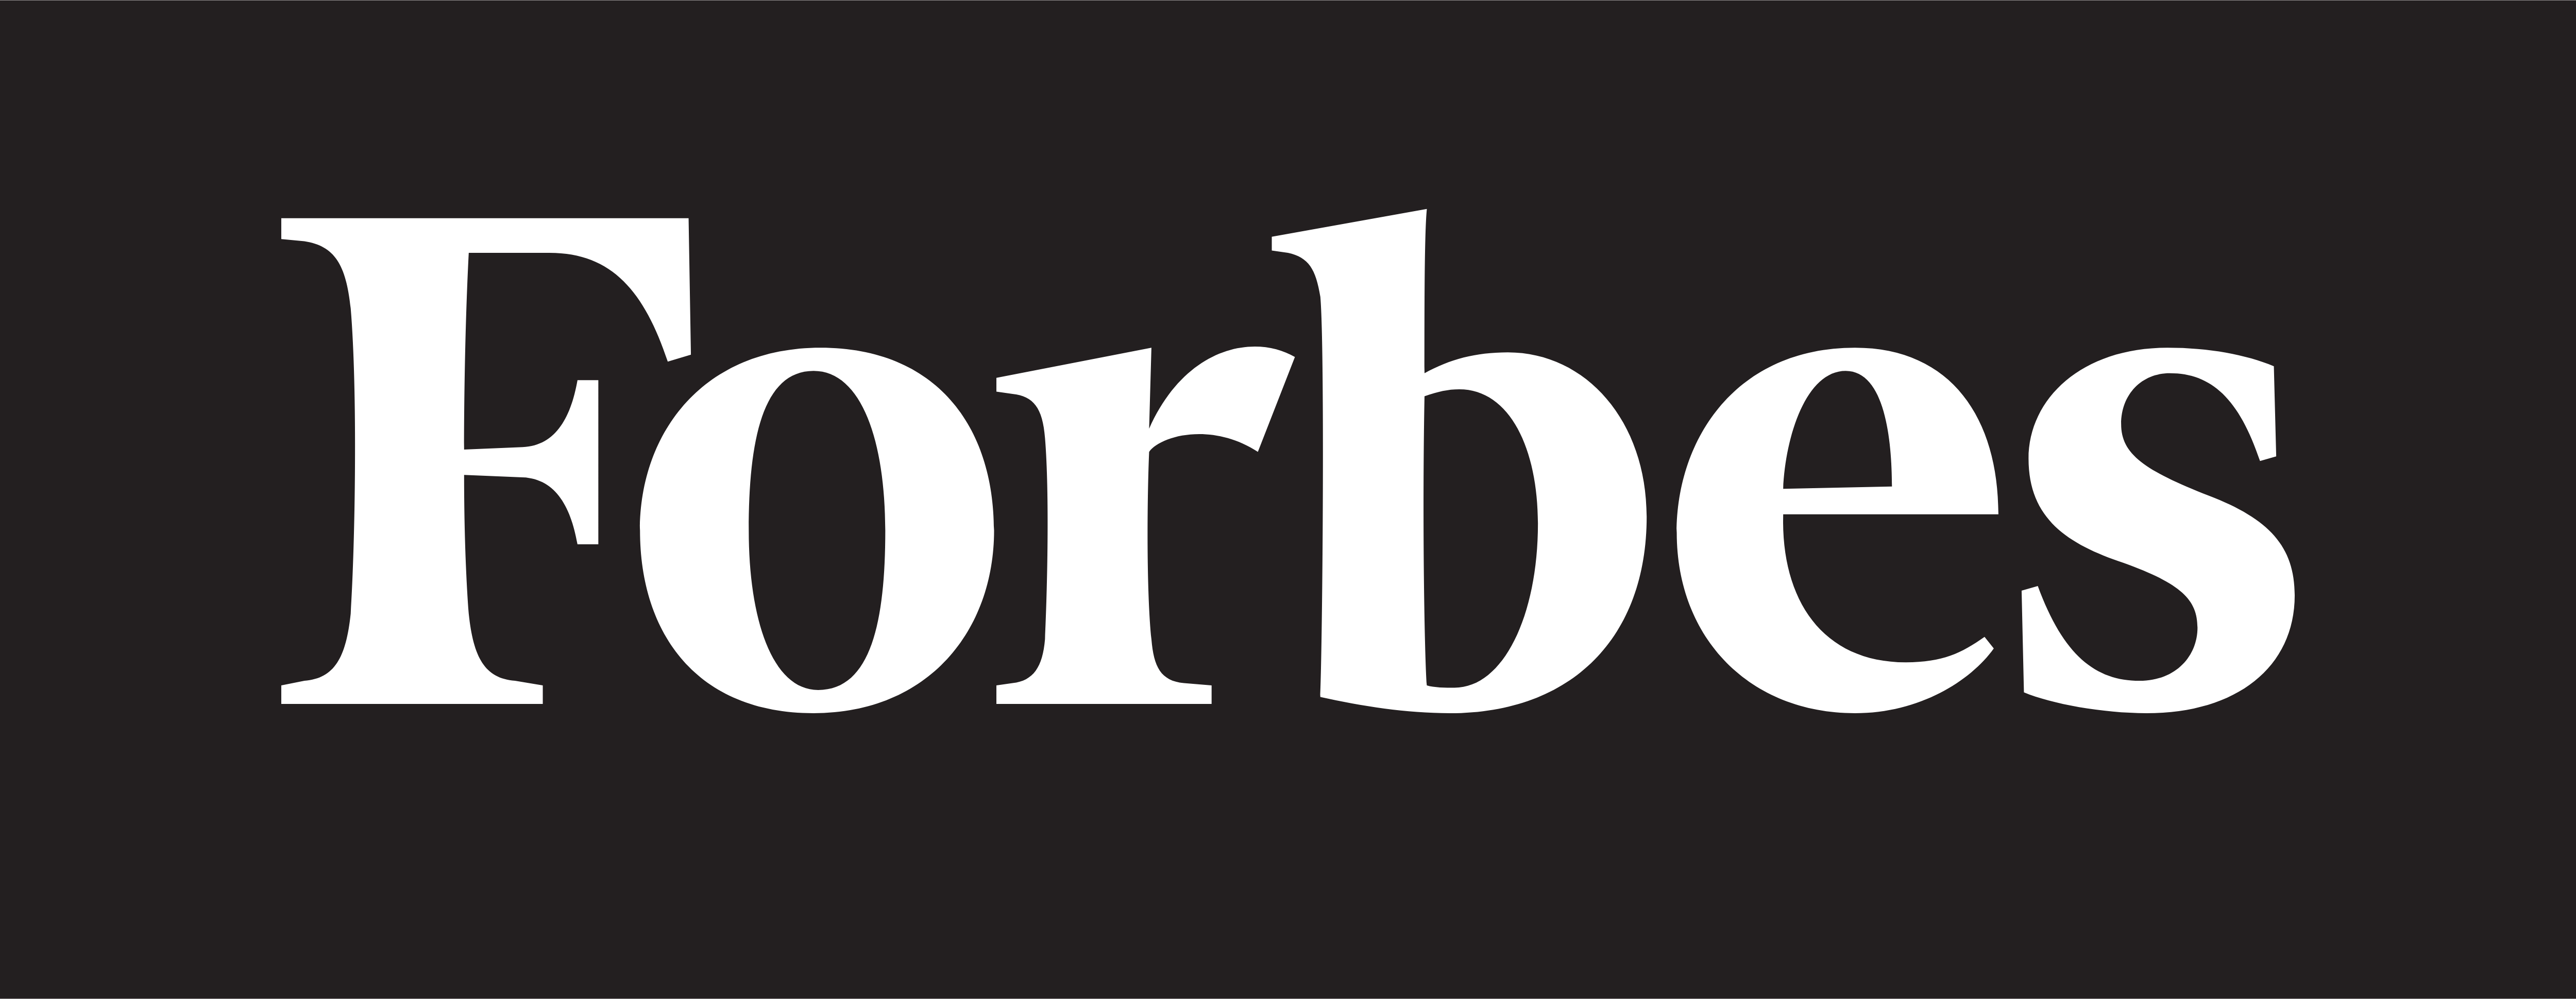 פורבס - הורדת לוגו